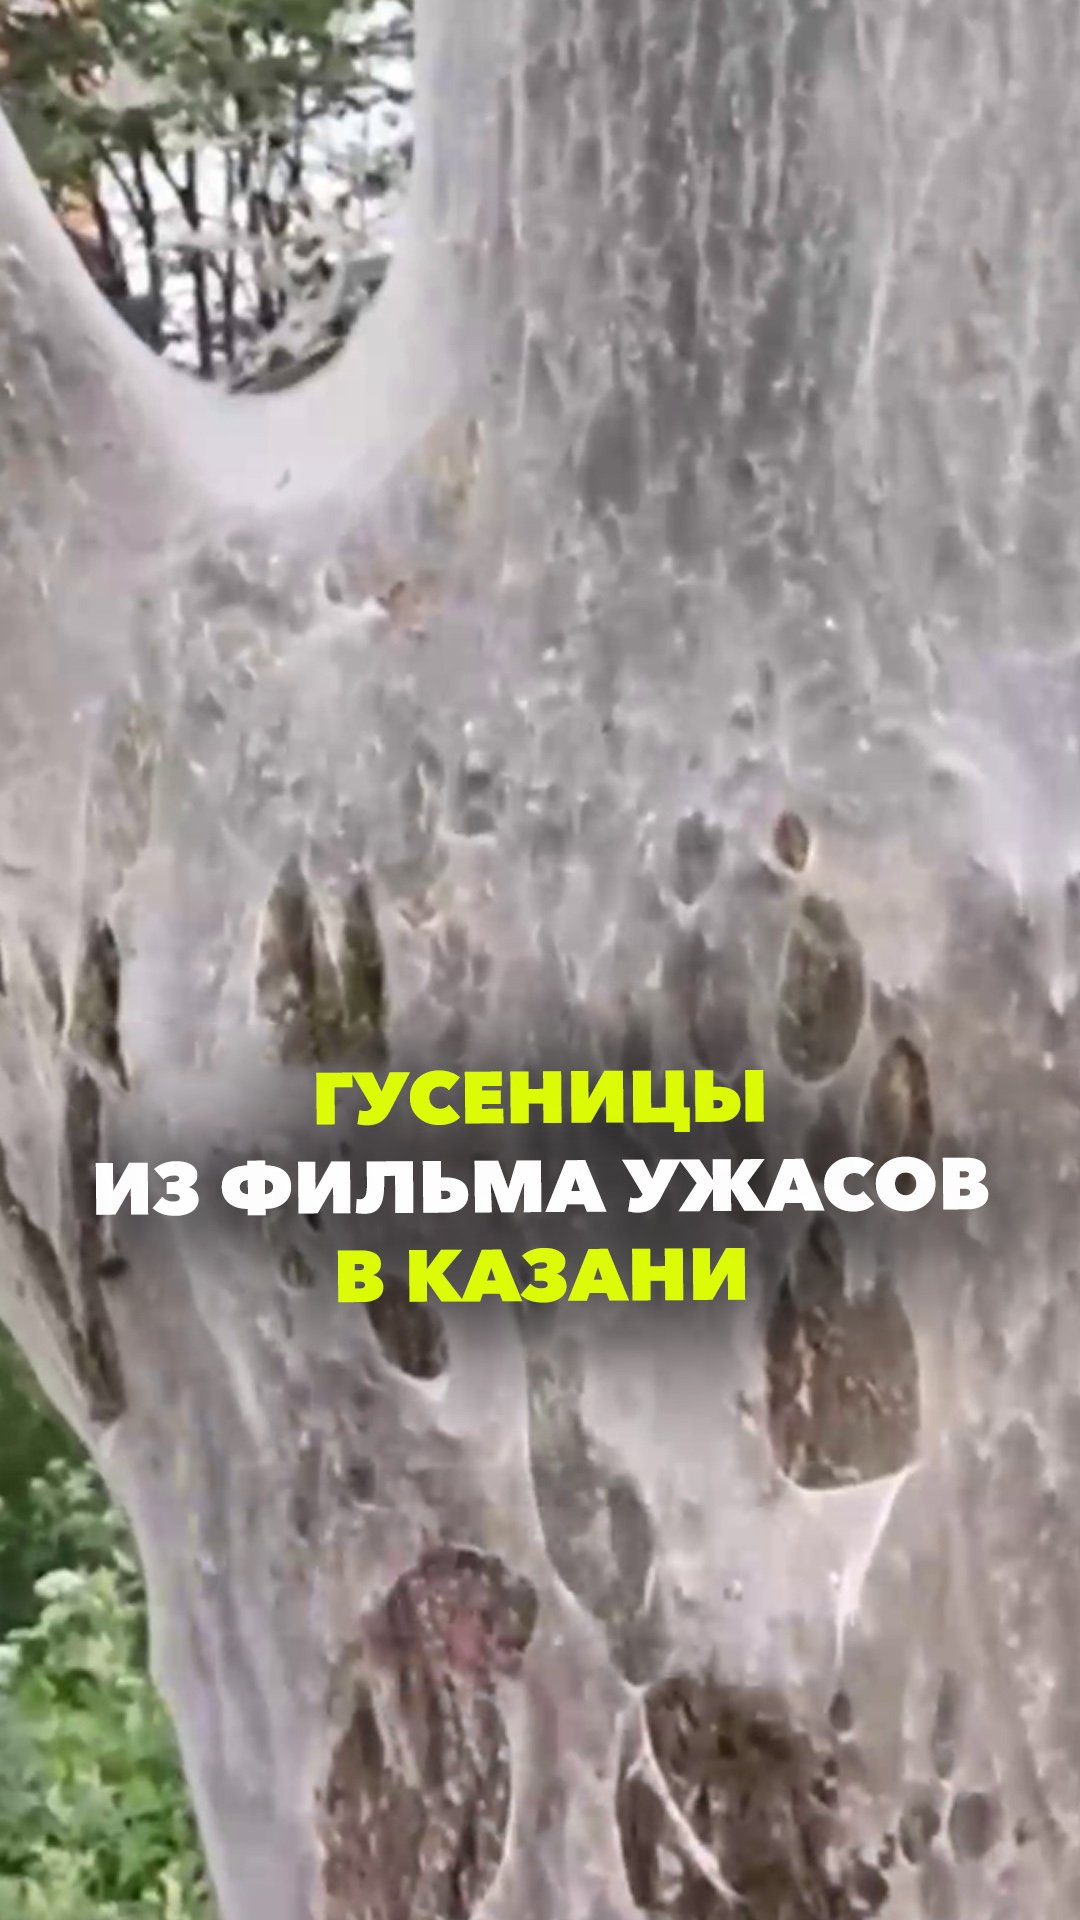 Фильм ужасов: в Казани деревья затянуто паутиной с гусеницами